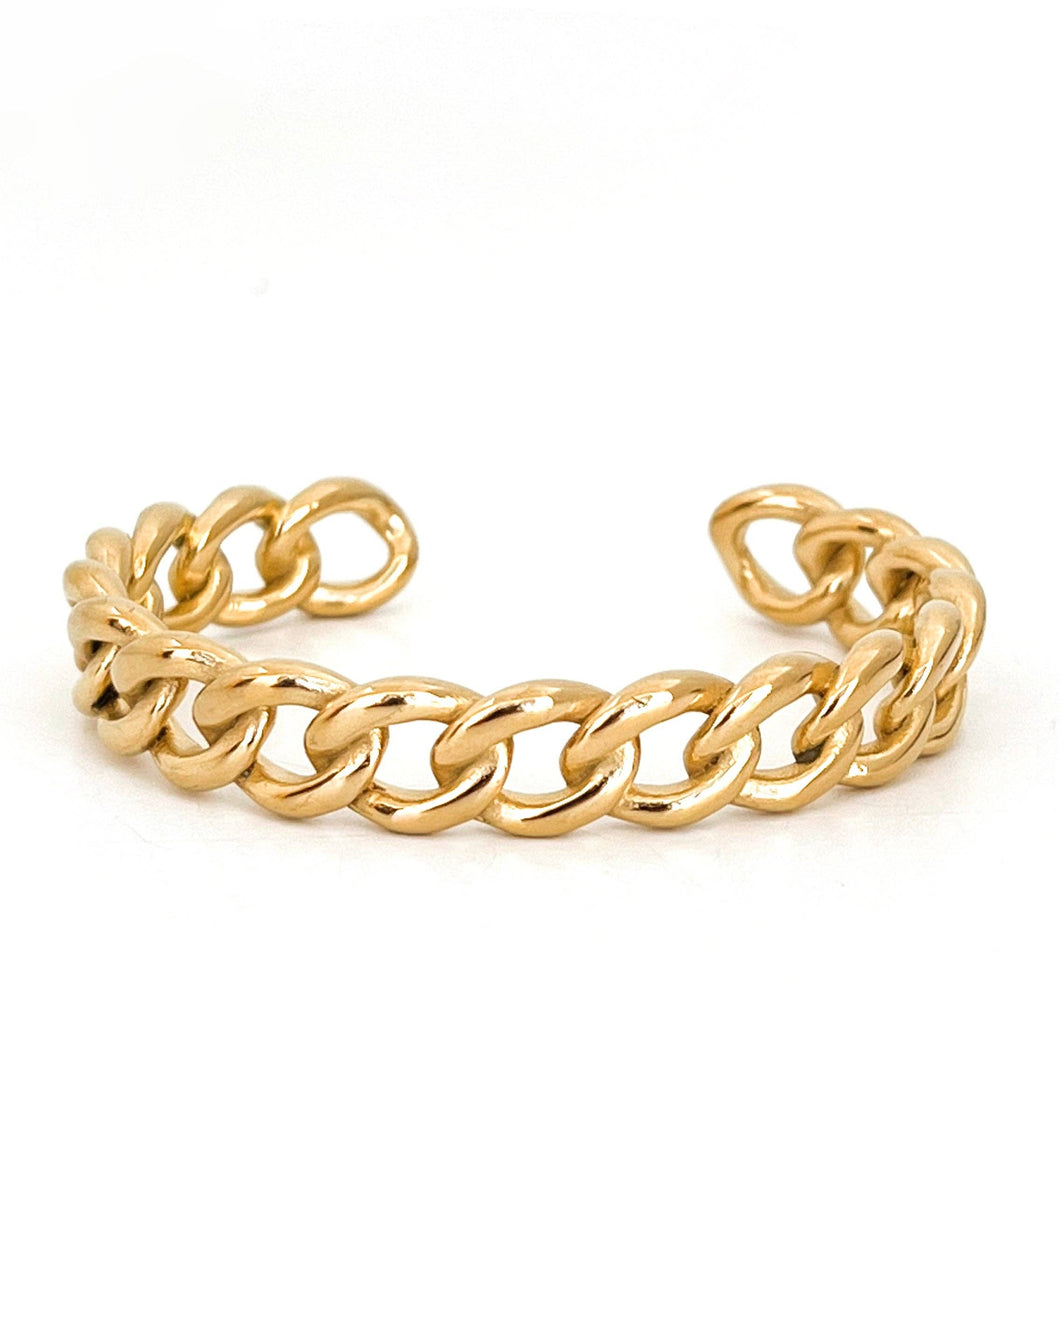 Brandy | 18K Plated Gold Cuff Bracelet